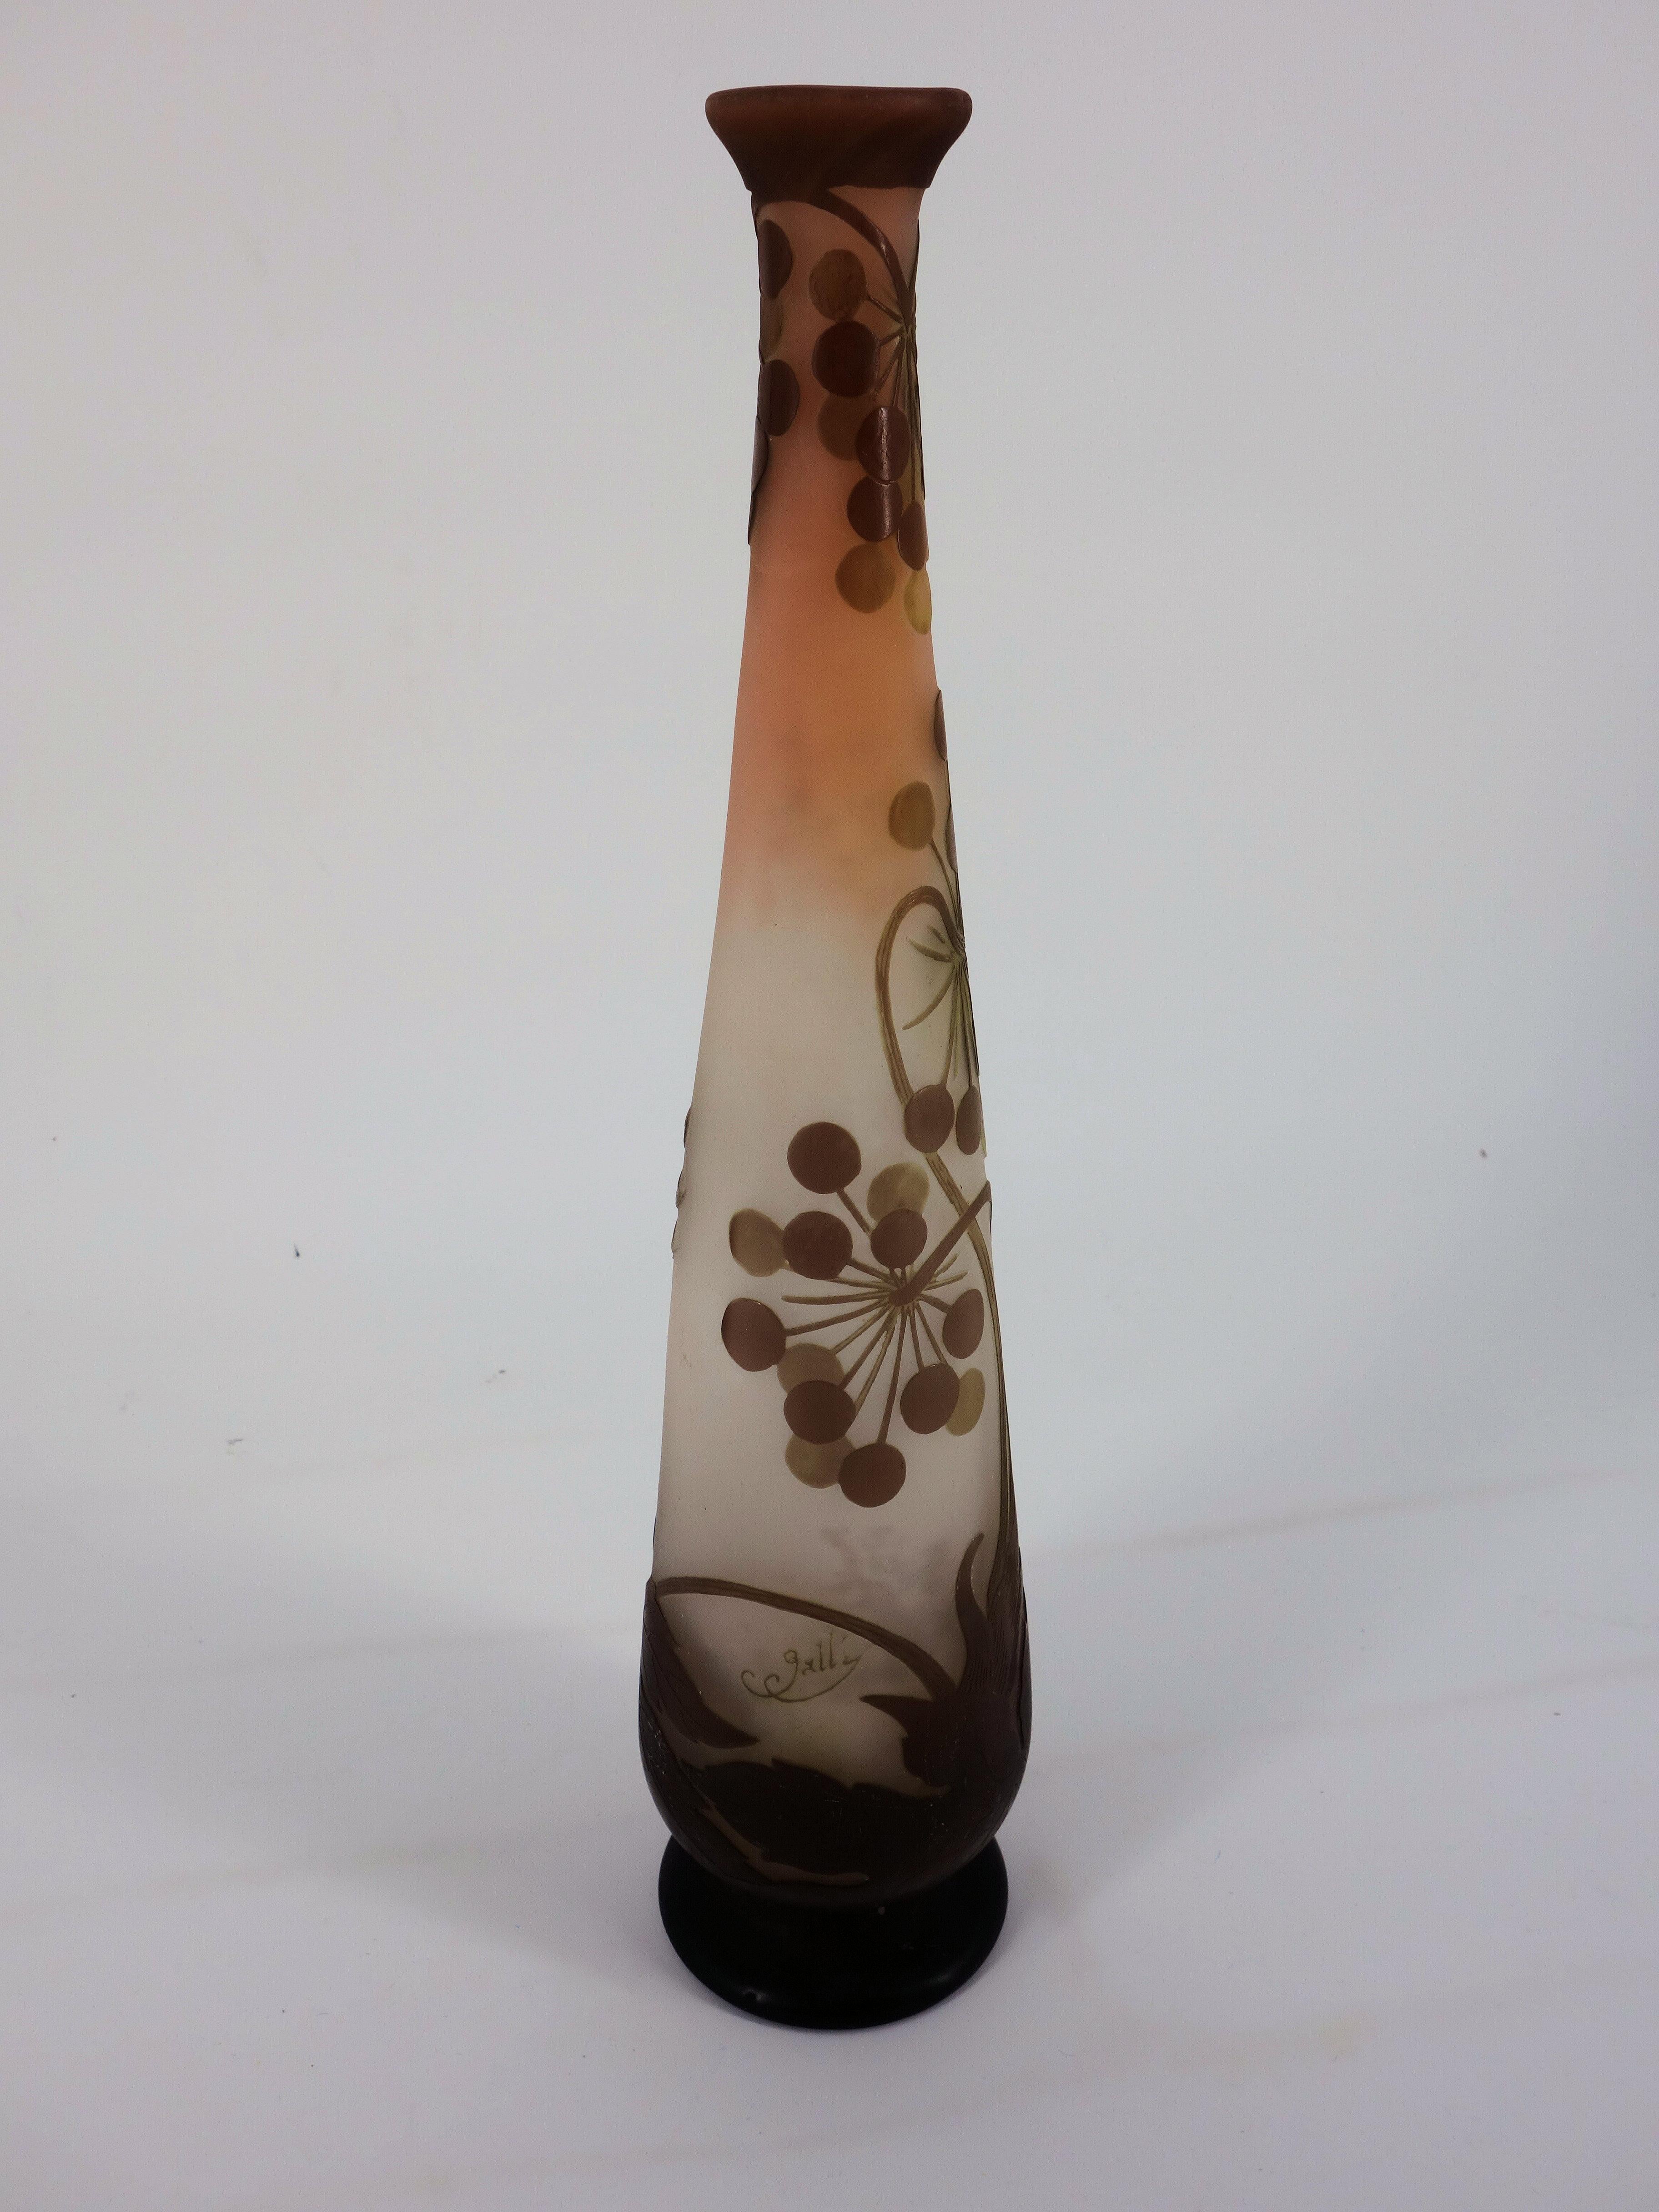 Französische Kamee-Glas-Vase „Umbels“ im Jugendstil von Emile Gall, Nancy, 40 cm – Sculpture von Emile Gallé